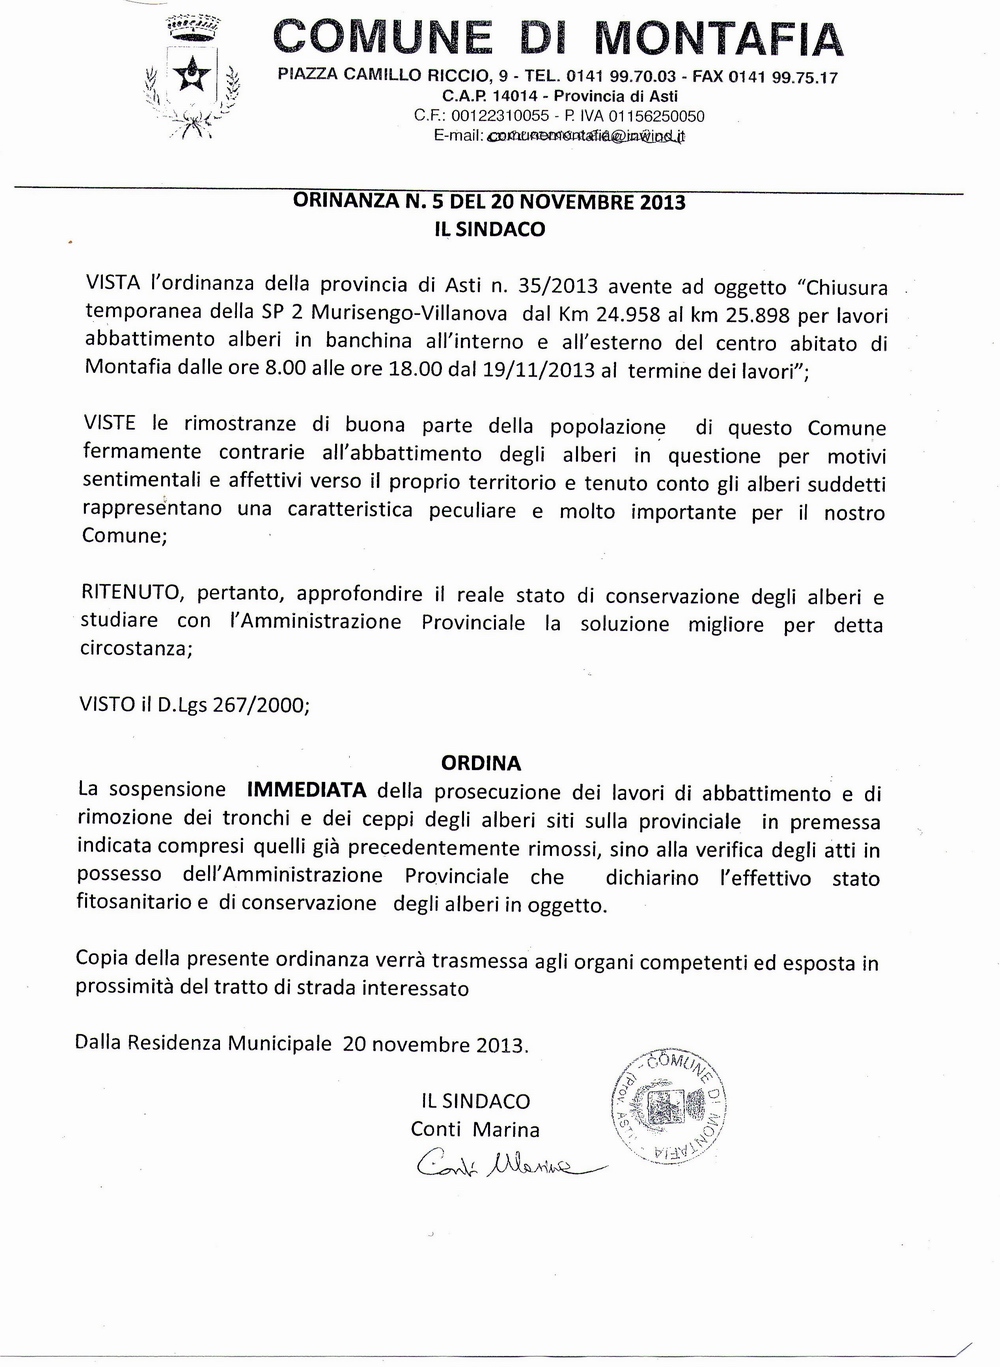 Ordinanza del Sindaco Marina Conti di immediata sospensione degli abbattimenti operati dalla Provincia di Asti dei Tigli dell alberata storica di Montafia. 